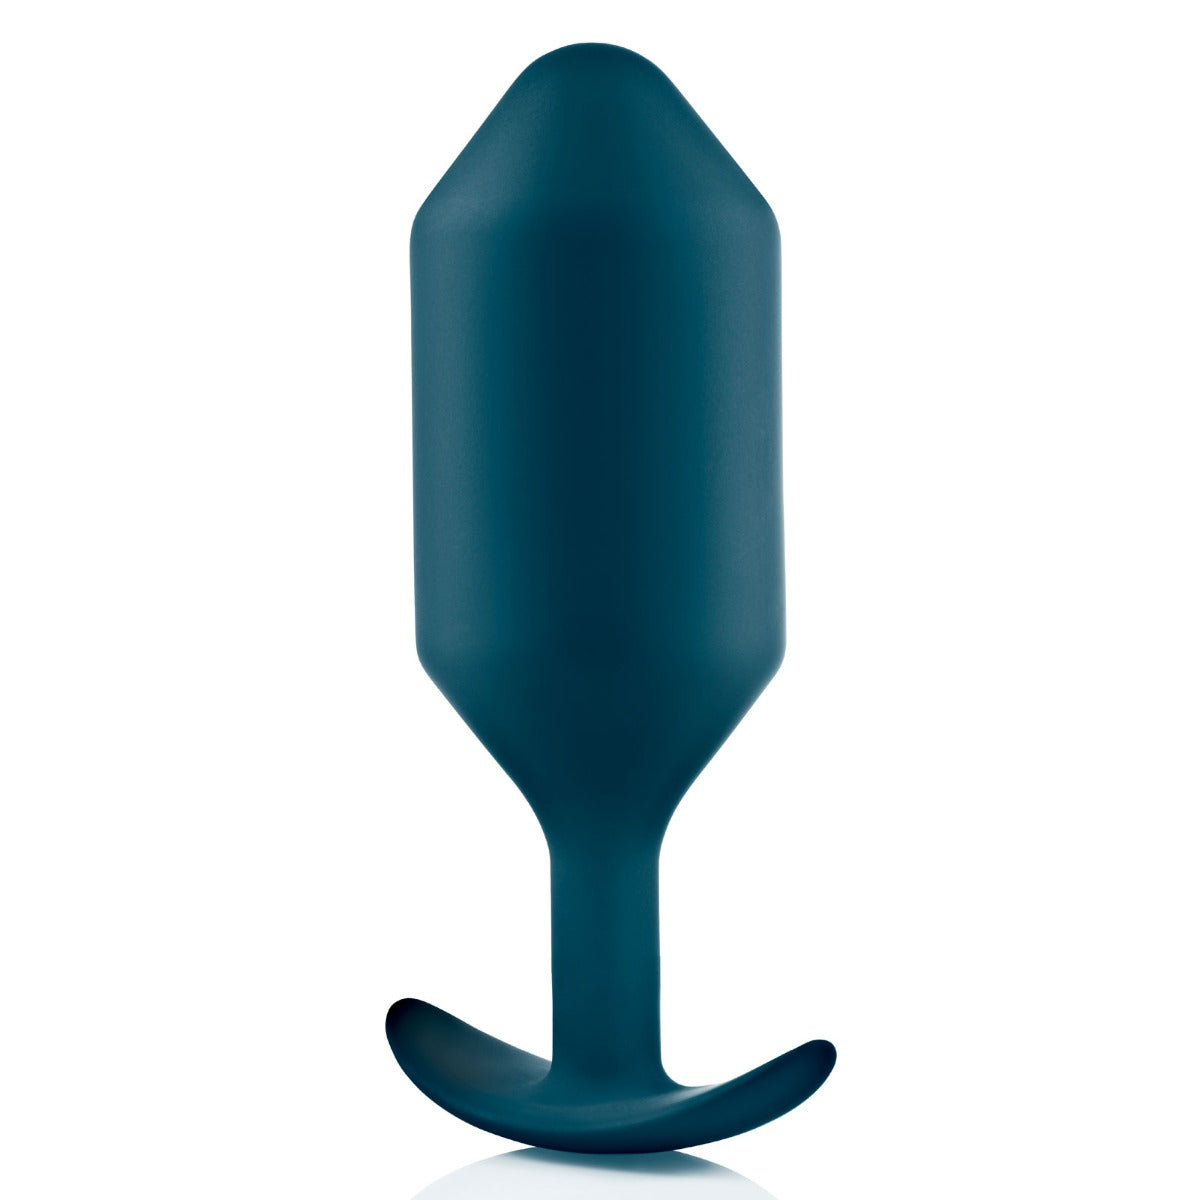 b-Vibe | Snug Plug 6 Weighted Silicone Plug - Marine Blue